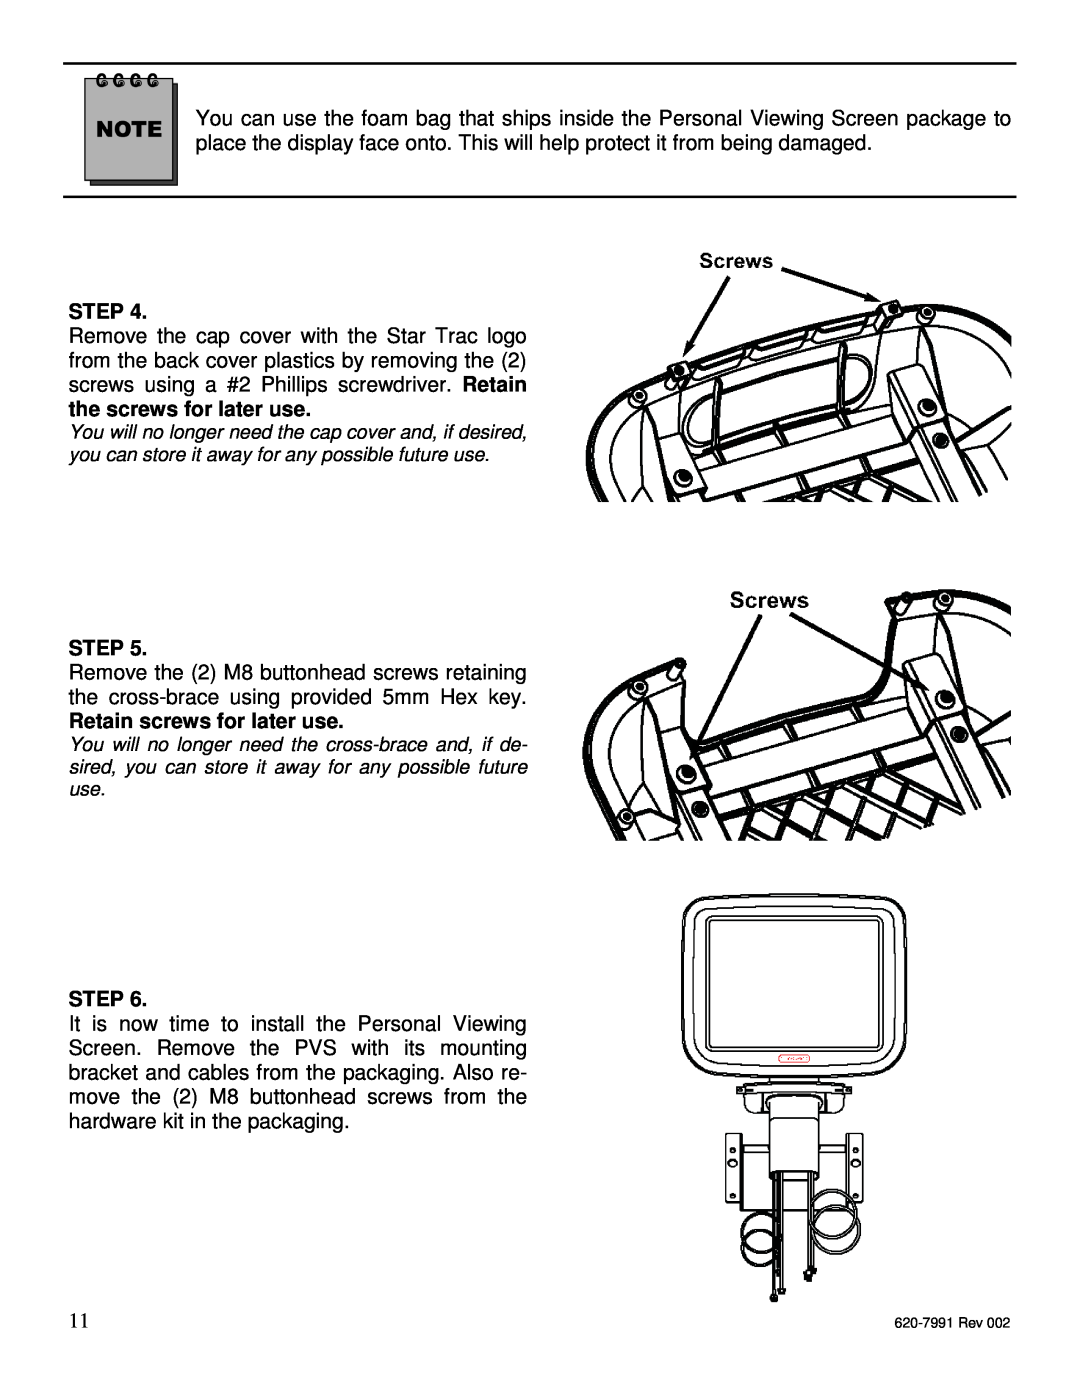 Star Trac E-TBTi, E-STi, E-RBi, E-UBi, E-TRi manual Step, Retain screws for later use 